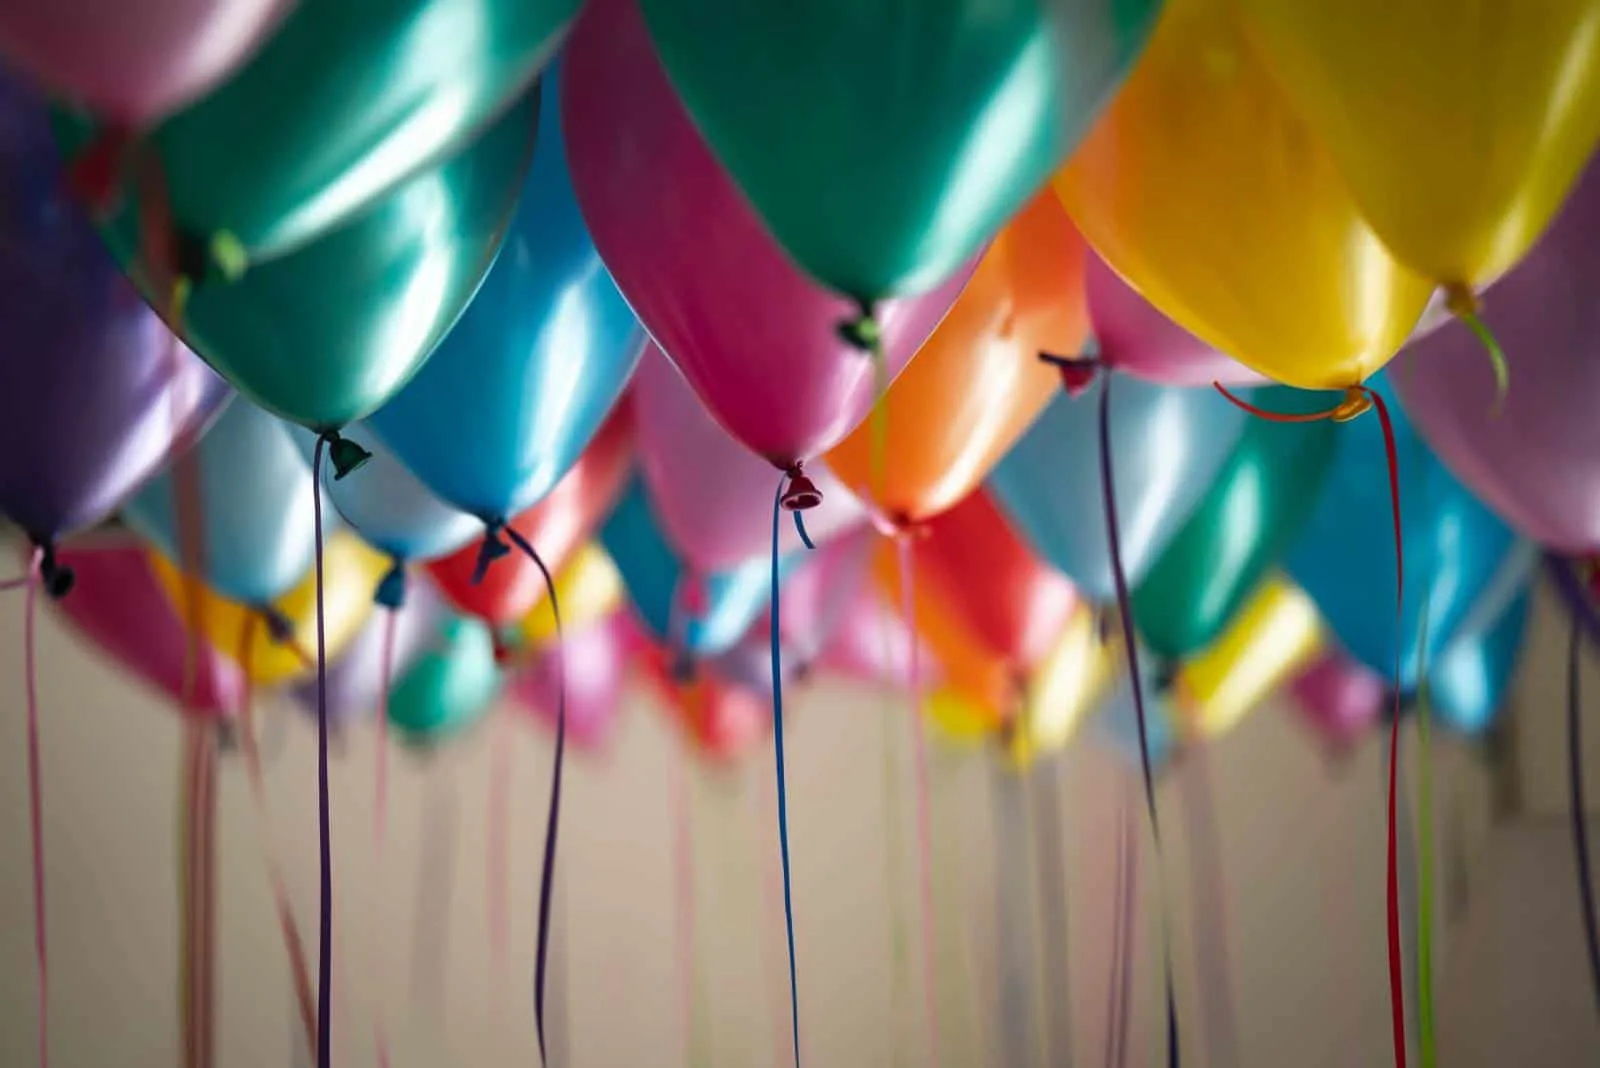 Luftballons in verschiedenen Farben